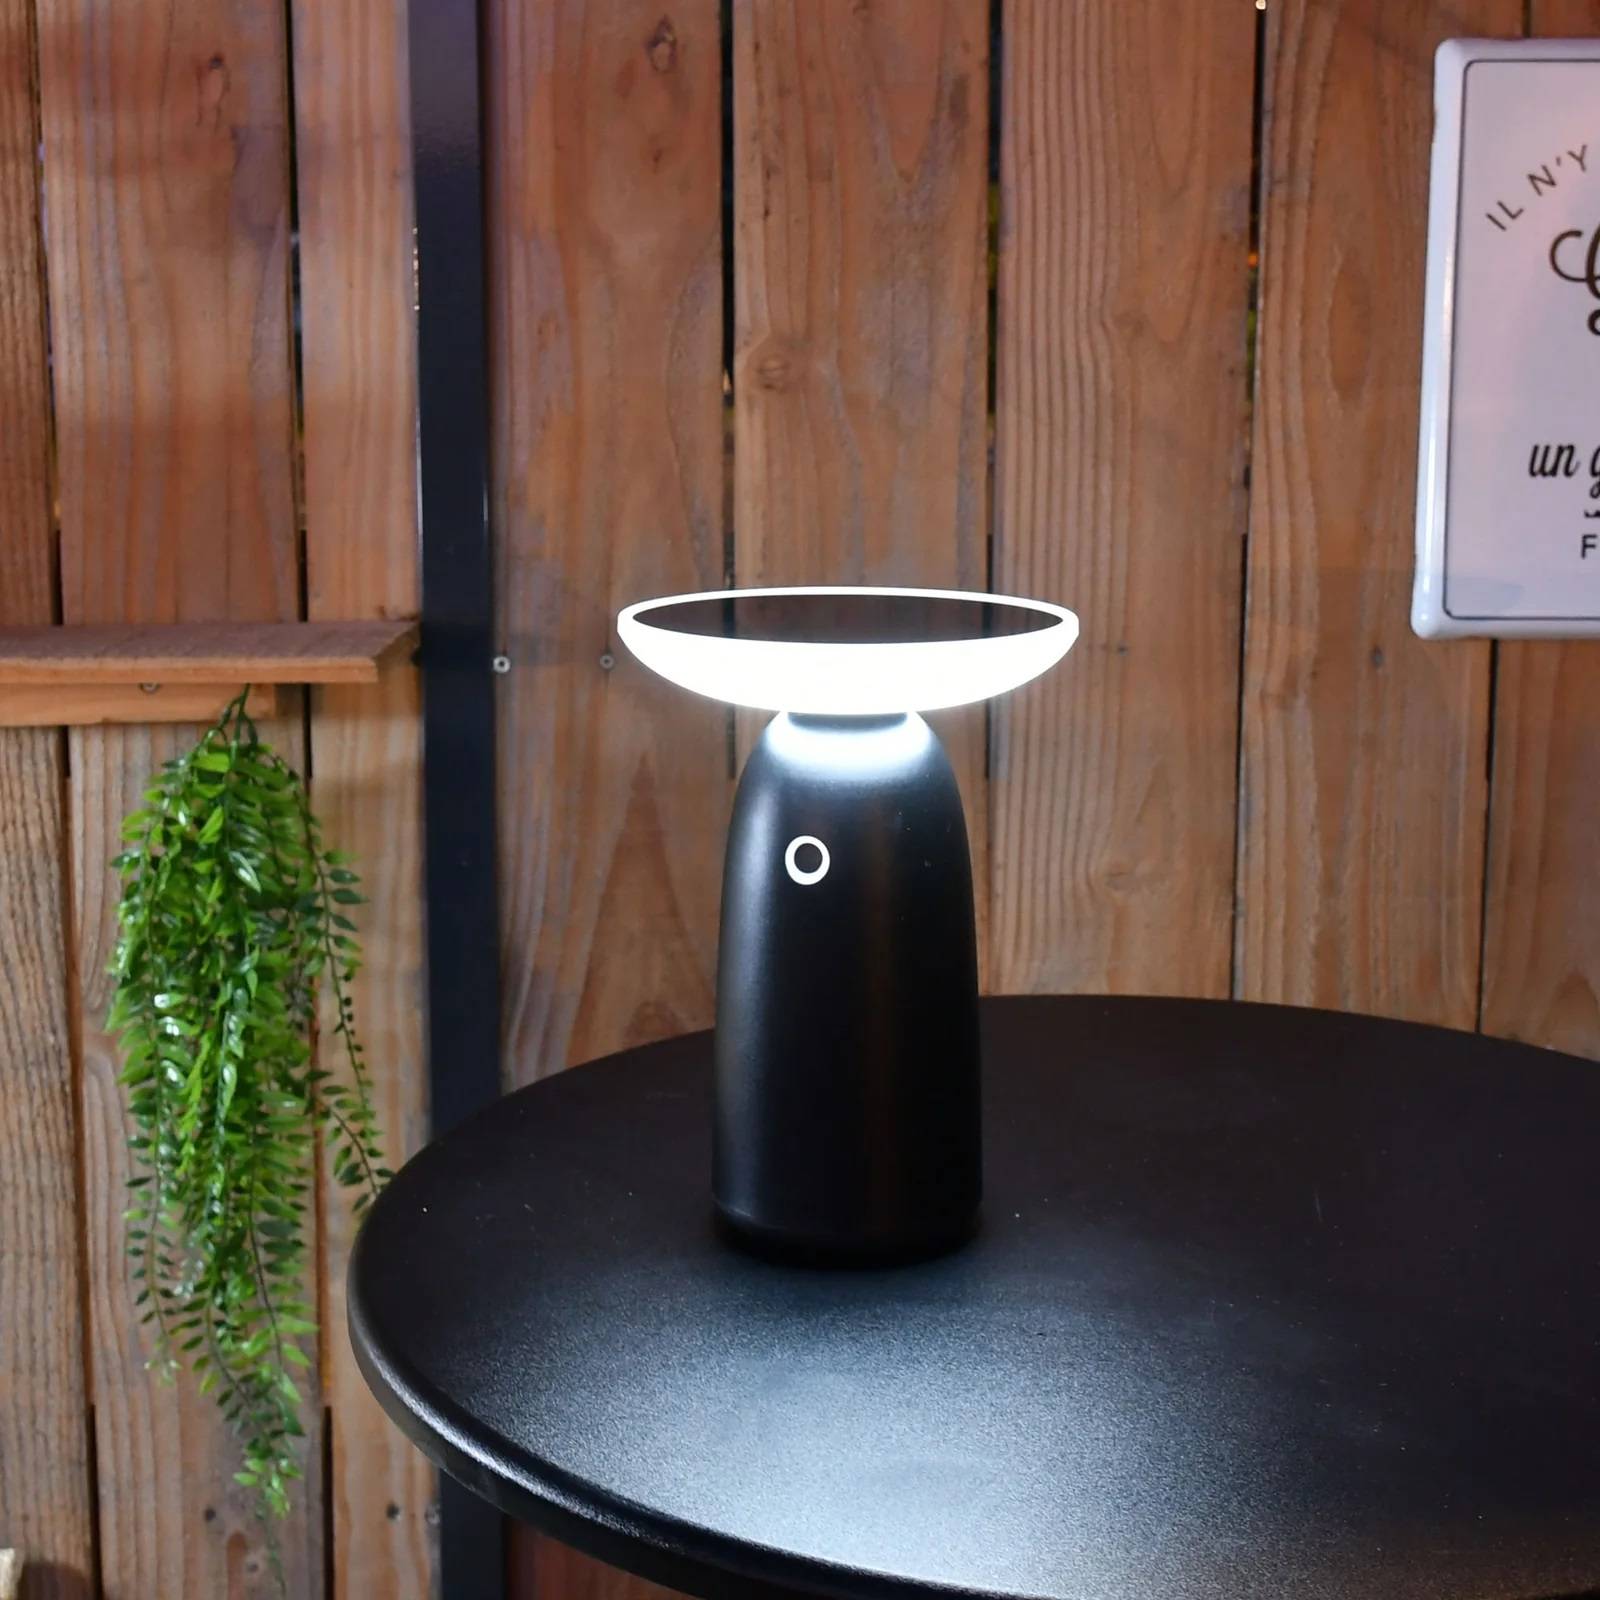 MIXNON LAMPE SOLAIRE Exterieur, 1 pièces Exterieur 360° étanche